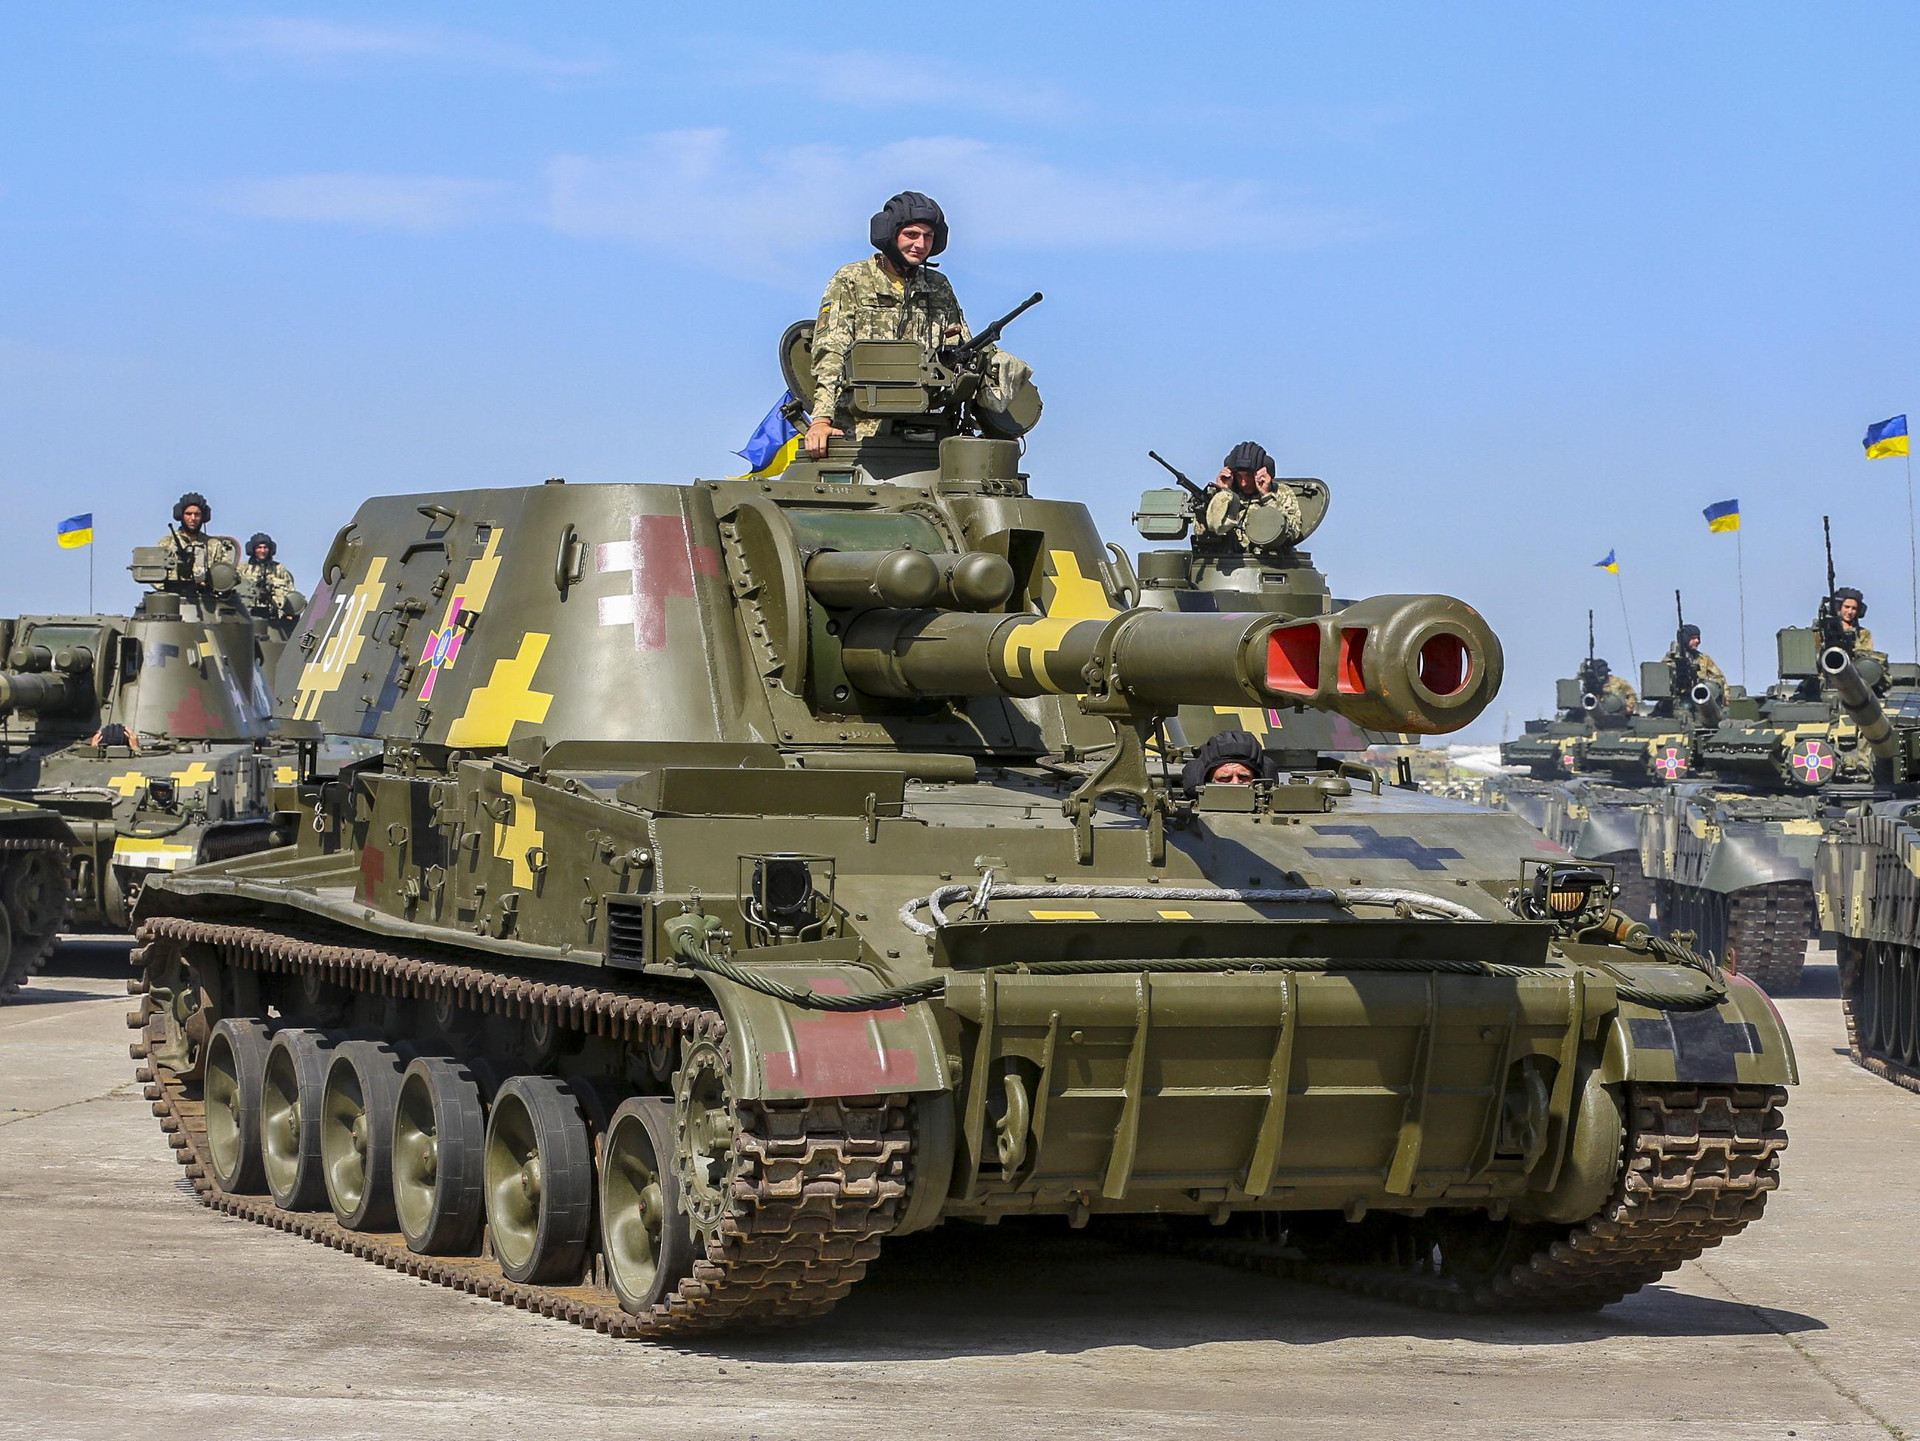 Phương Tây viện trợ ồ ạt, pháo binh Ukraine sẽ vực dậy giữa cơn khủng hoảng? - 1